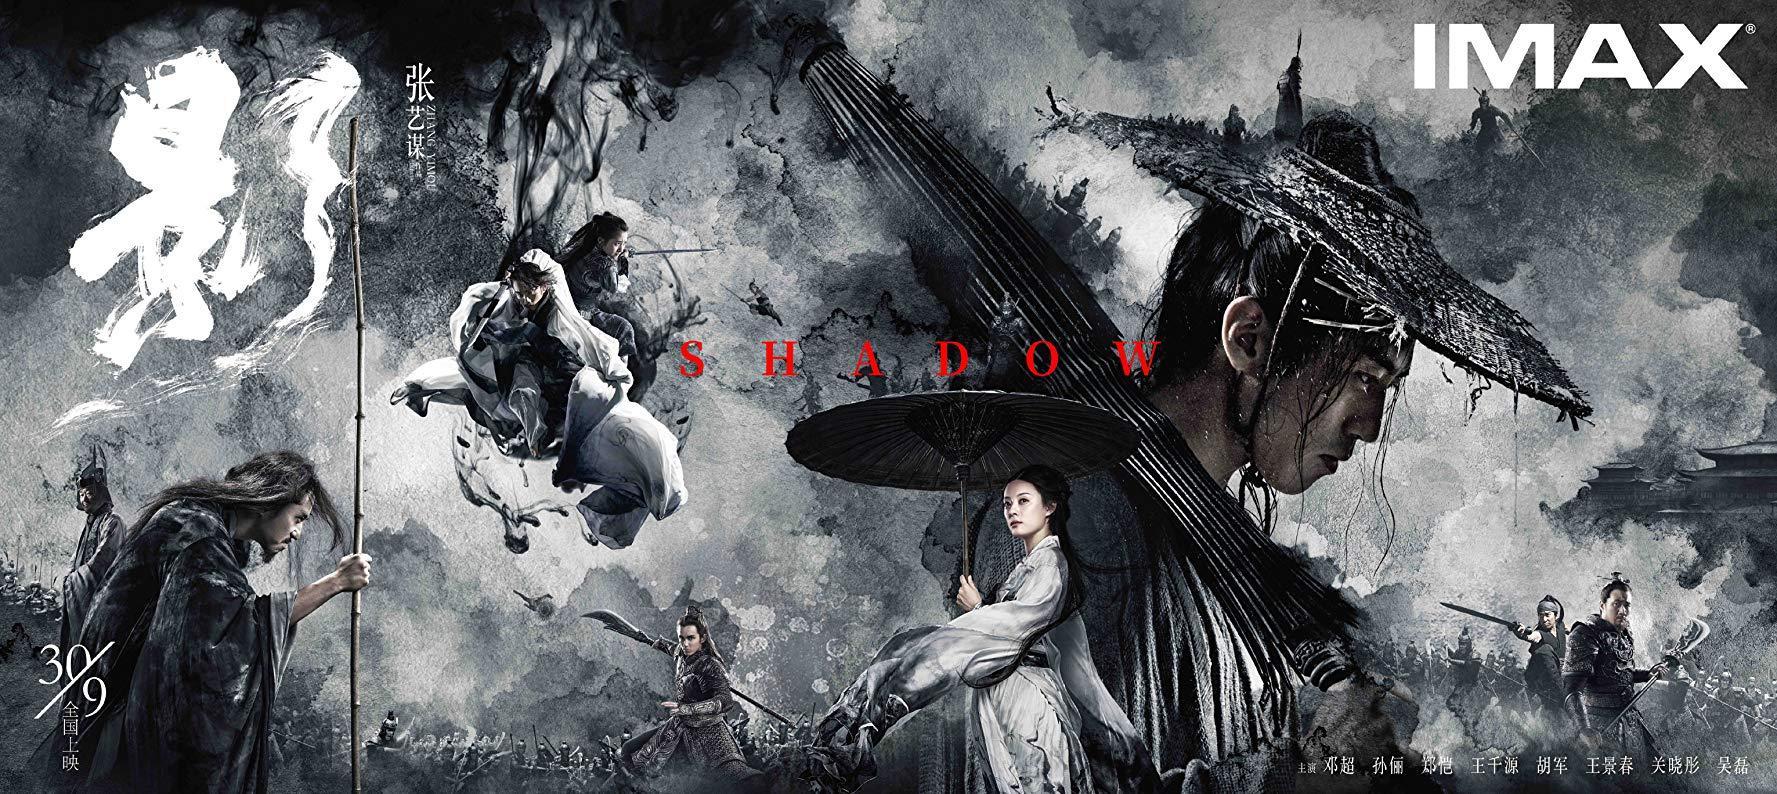 مشاهدة فيلم Shadow (2018) مترجم